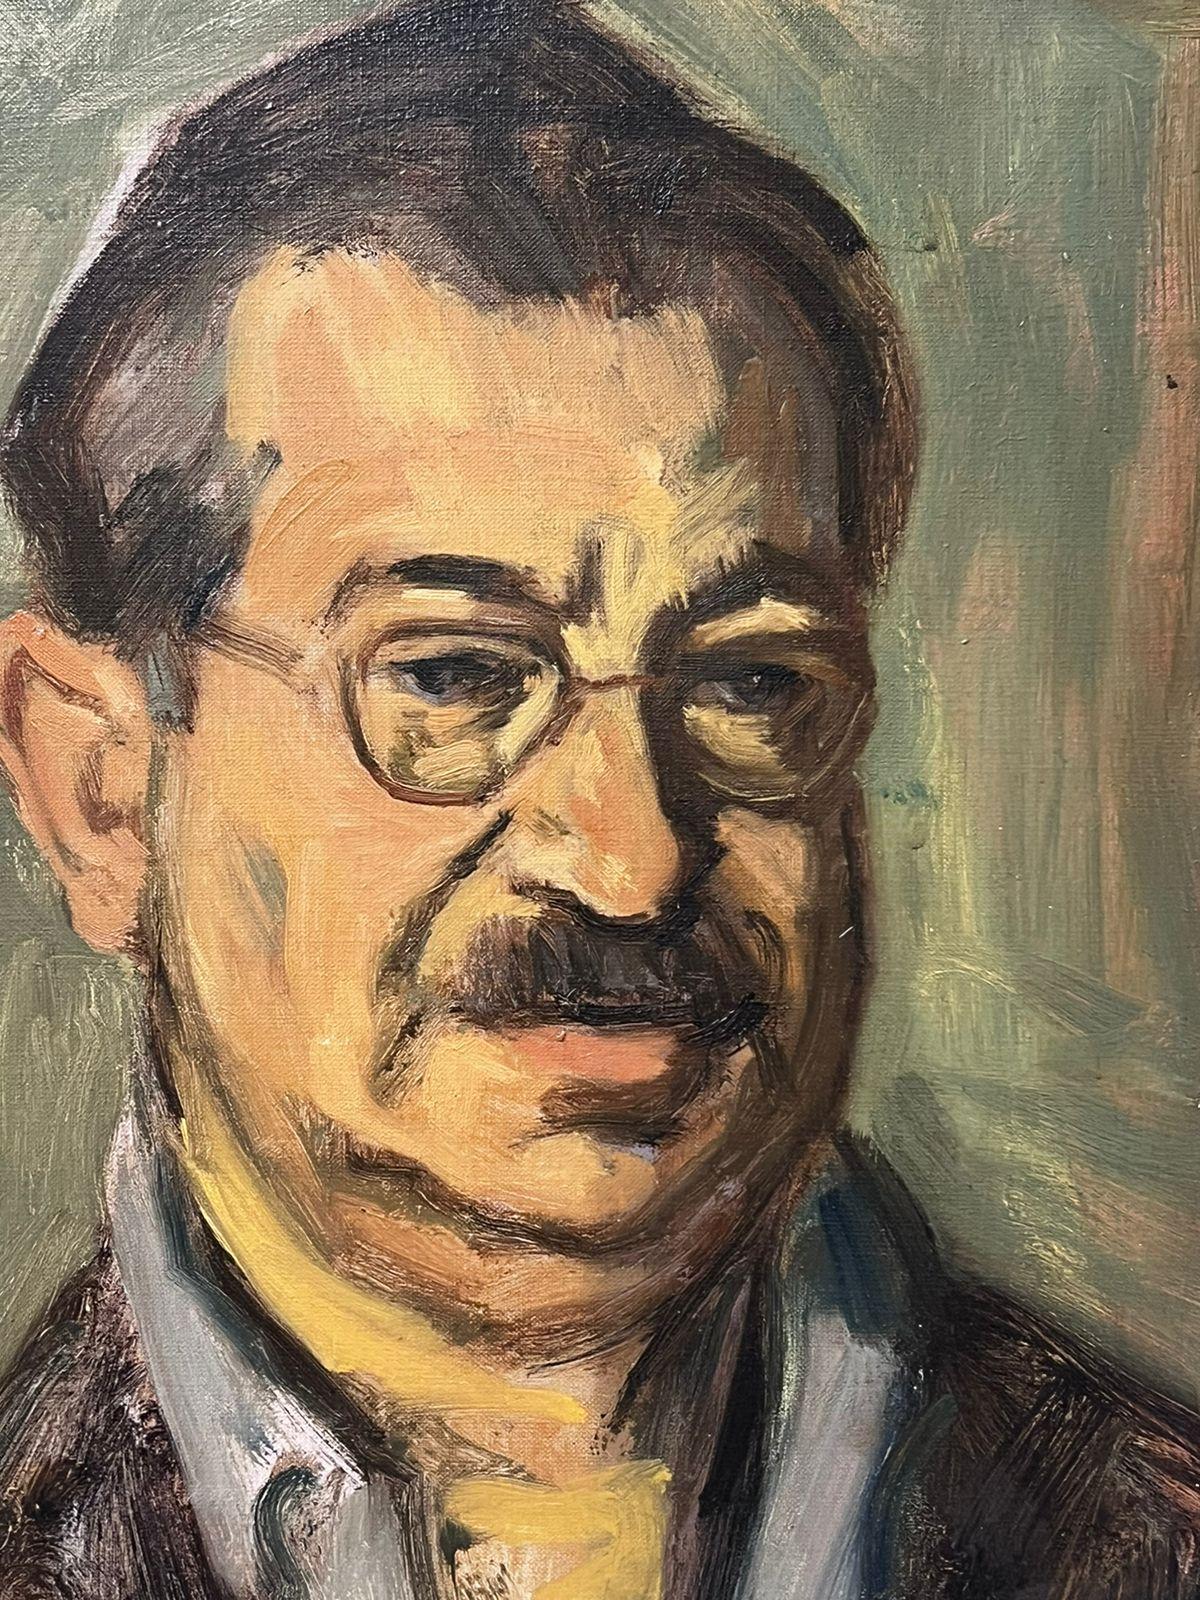 20e siècle Portrait d'un homme avec des lunettes par un artiste polonais renommé Huile sur toile - Painting de Jacob Markiel